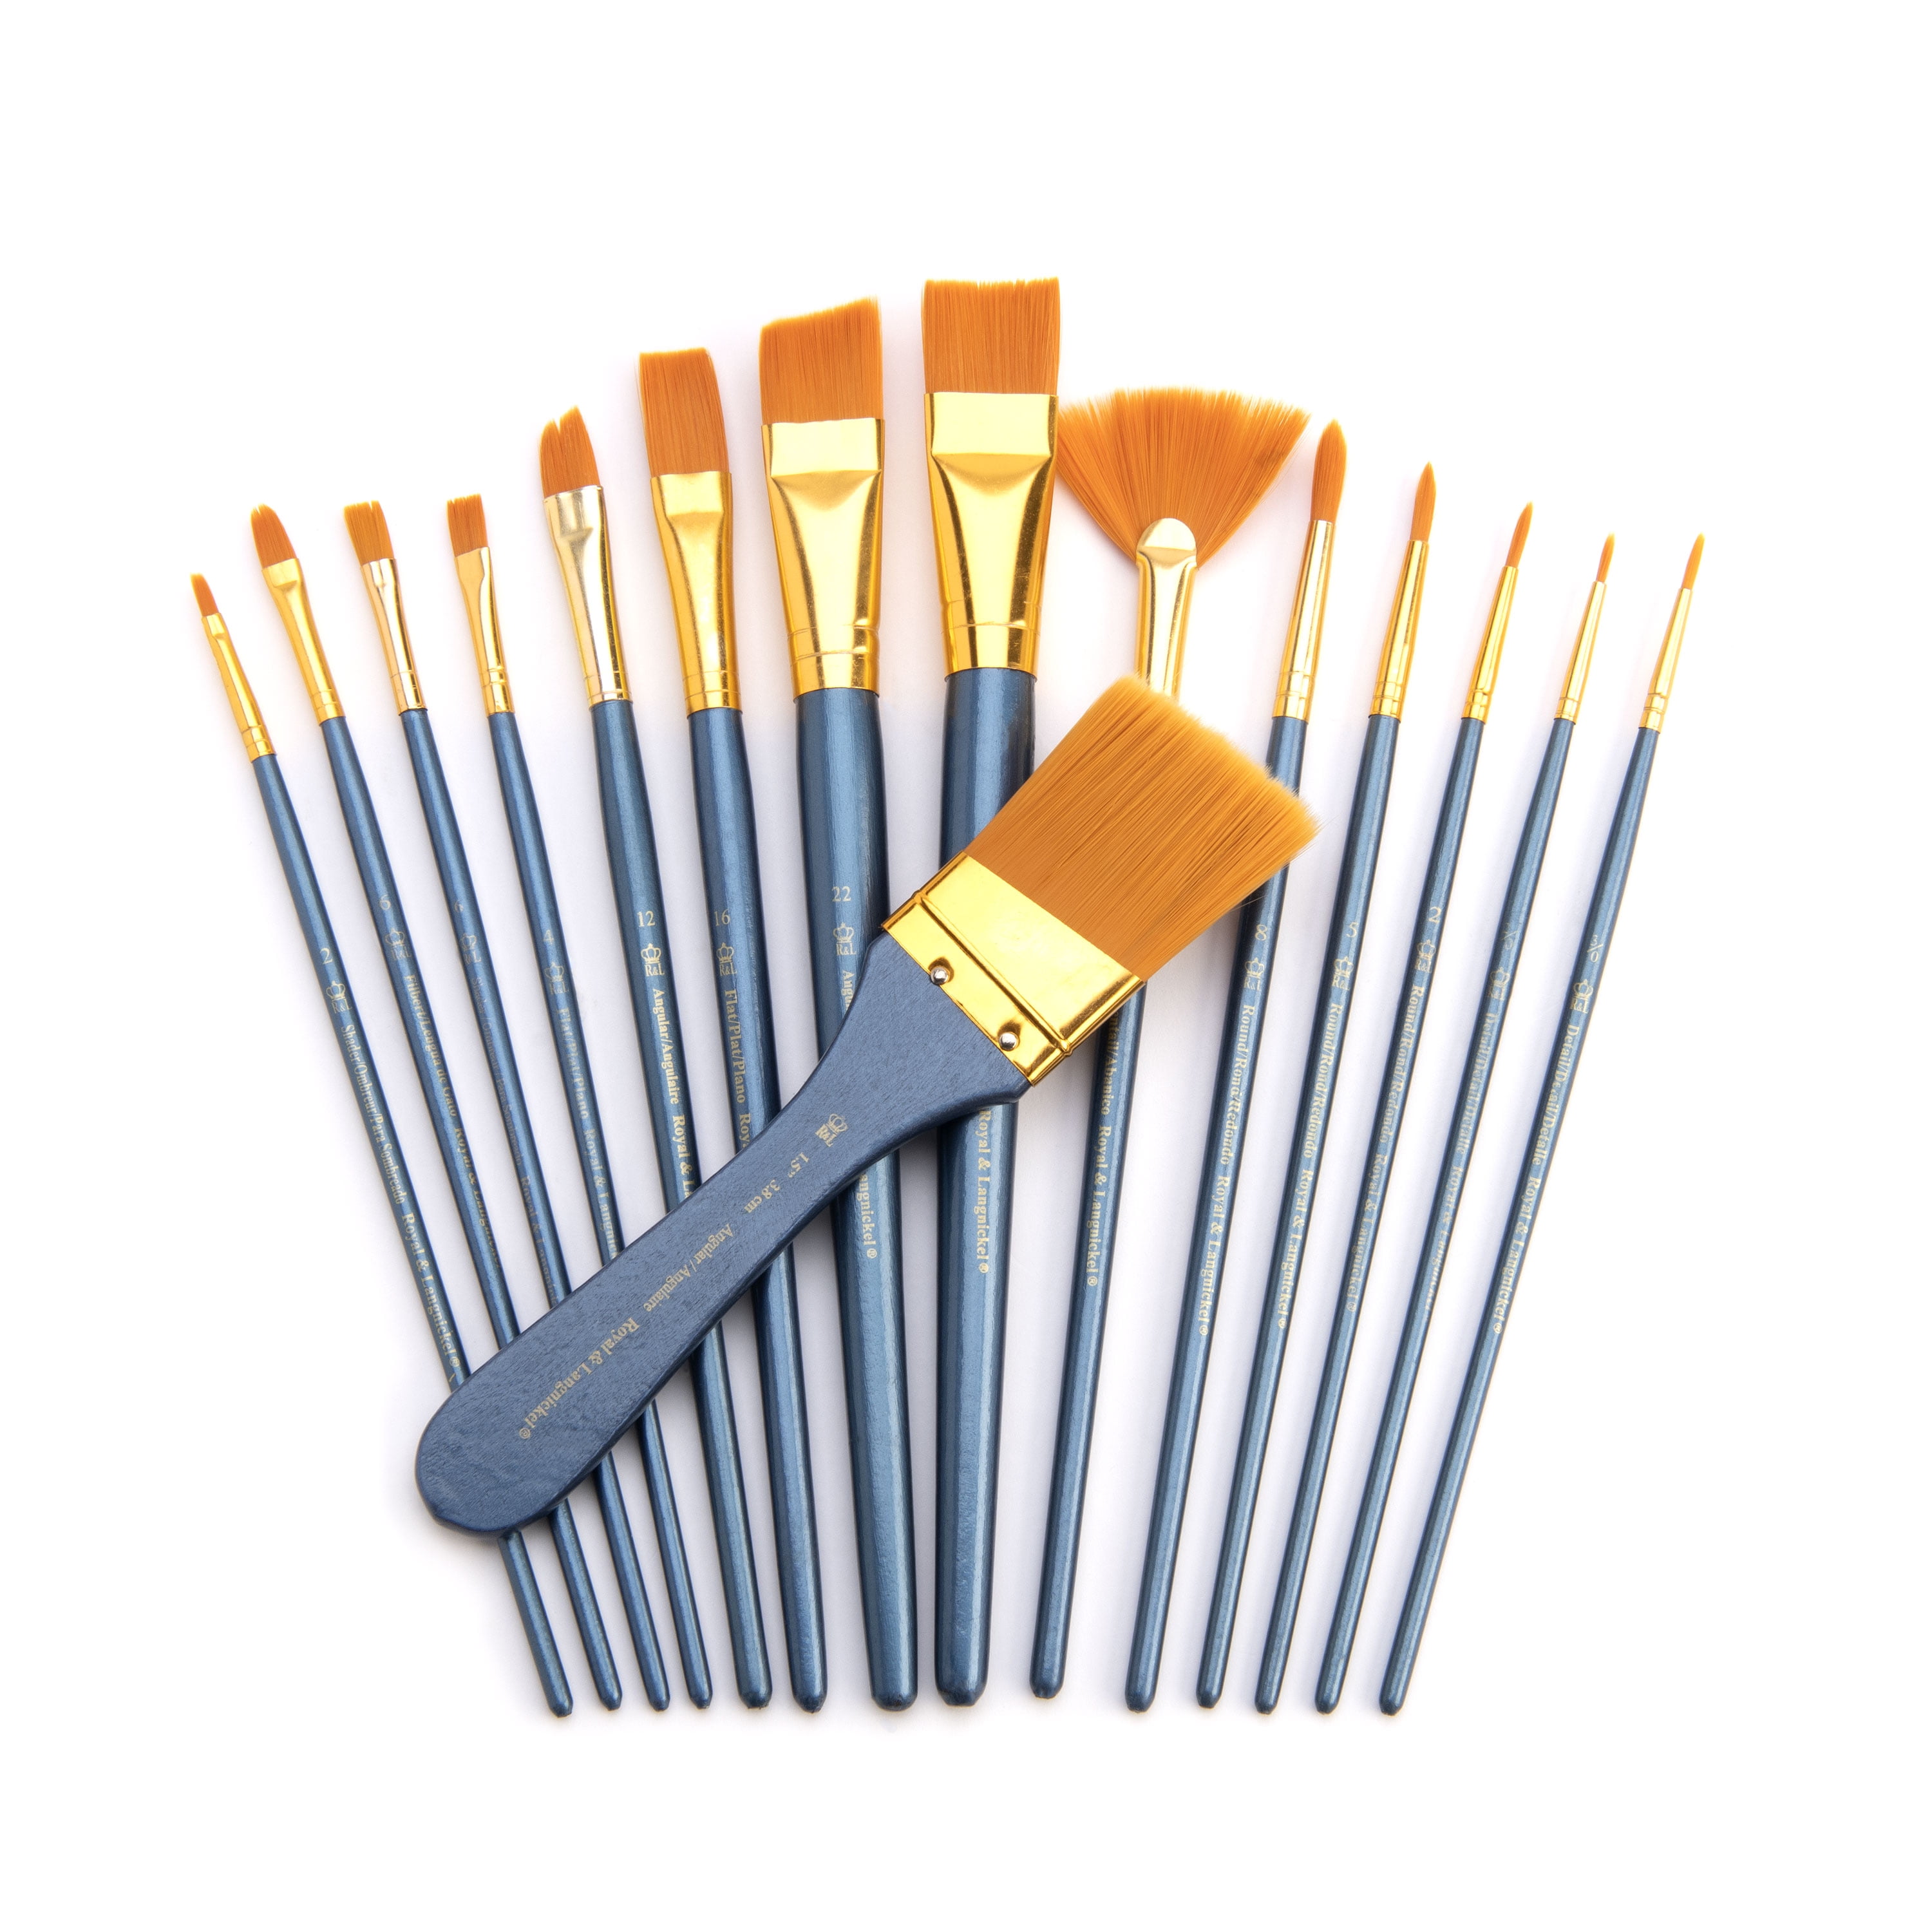 Royal & Langnickel Cool Art Craft Brush Set, 15pc